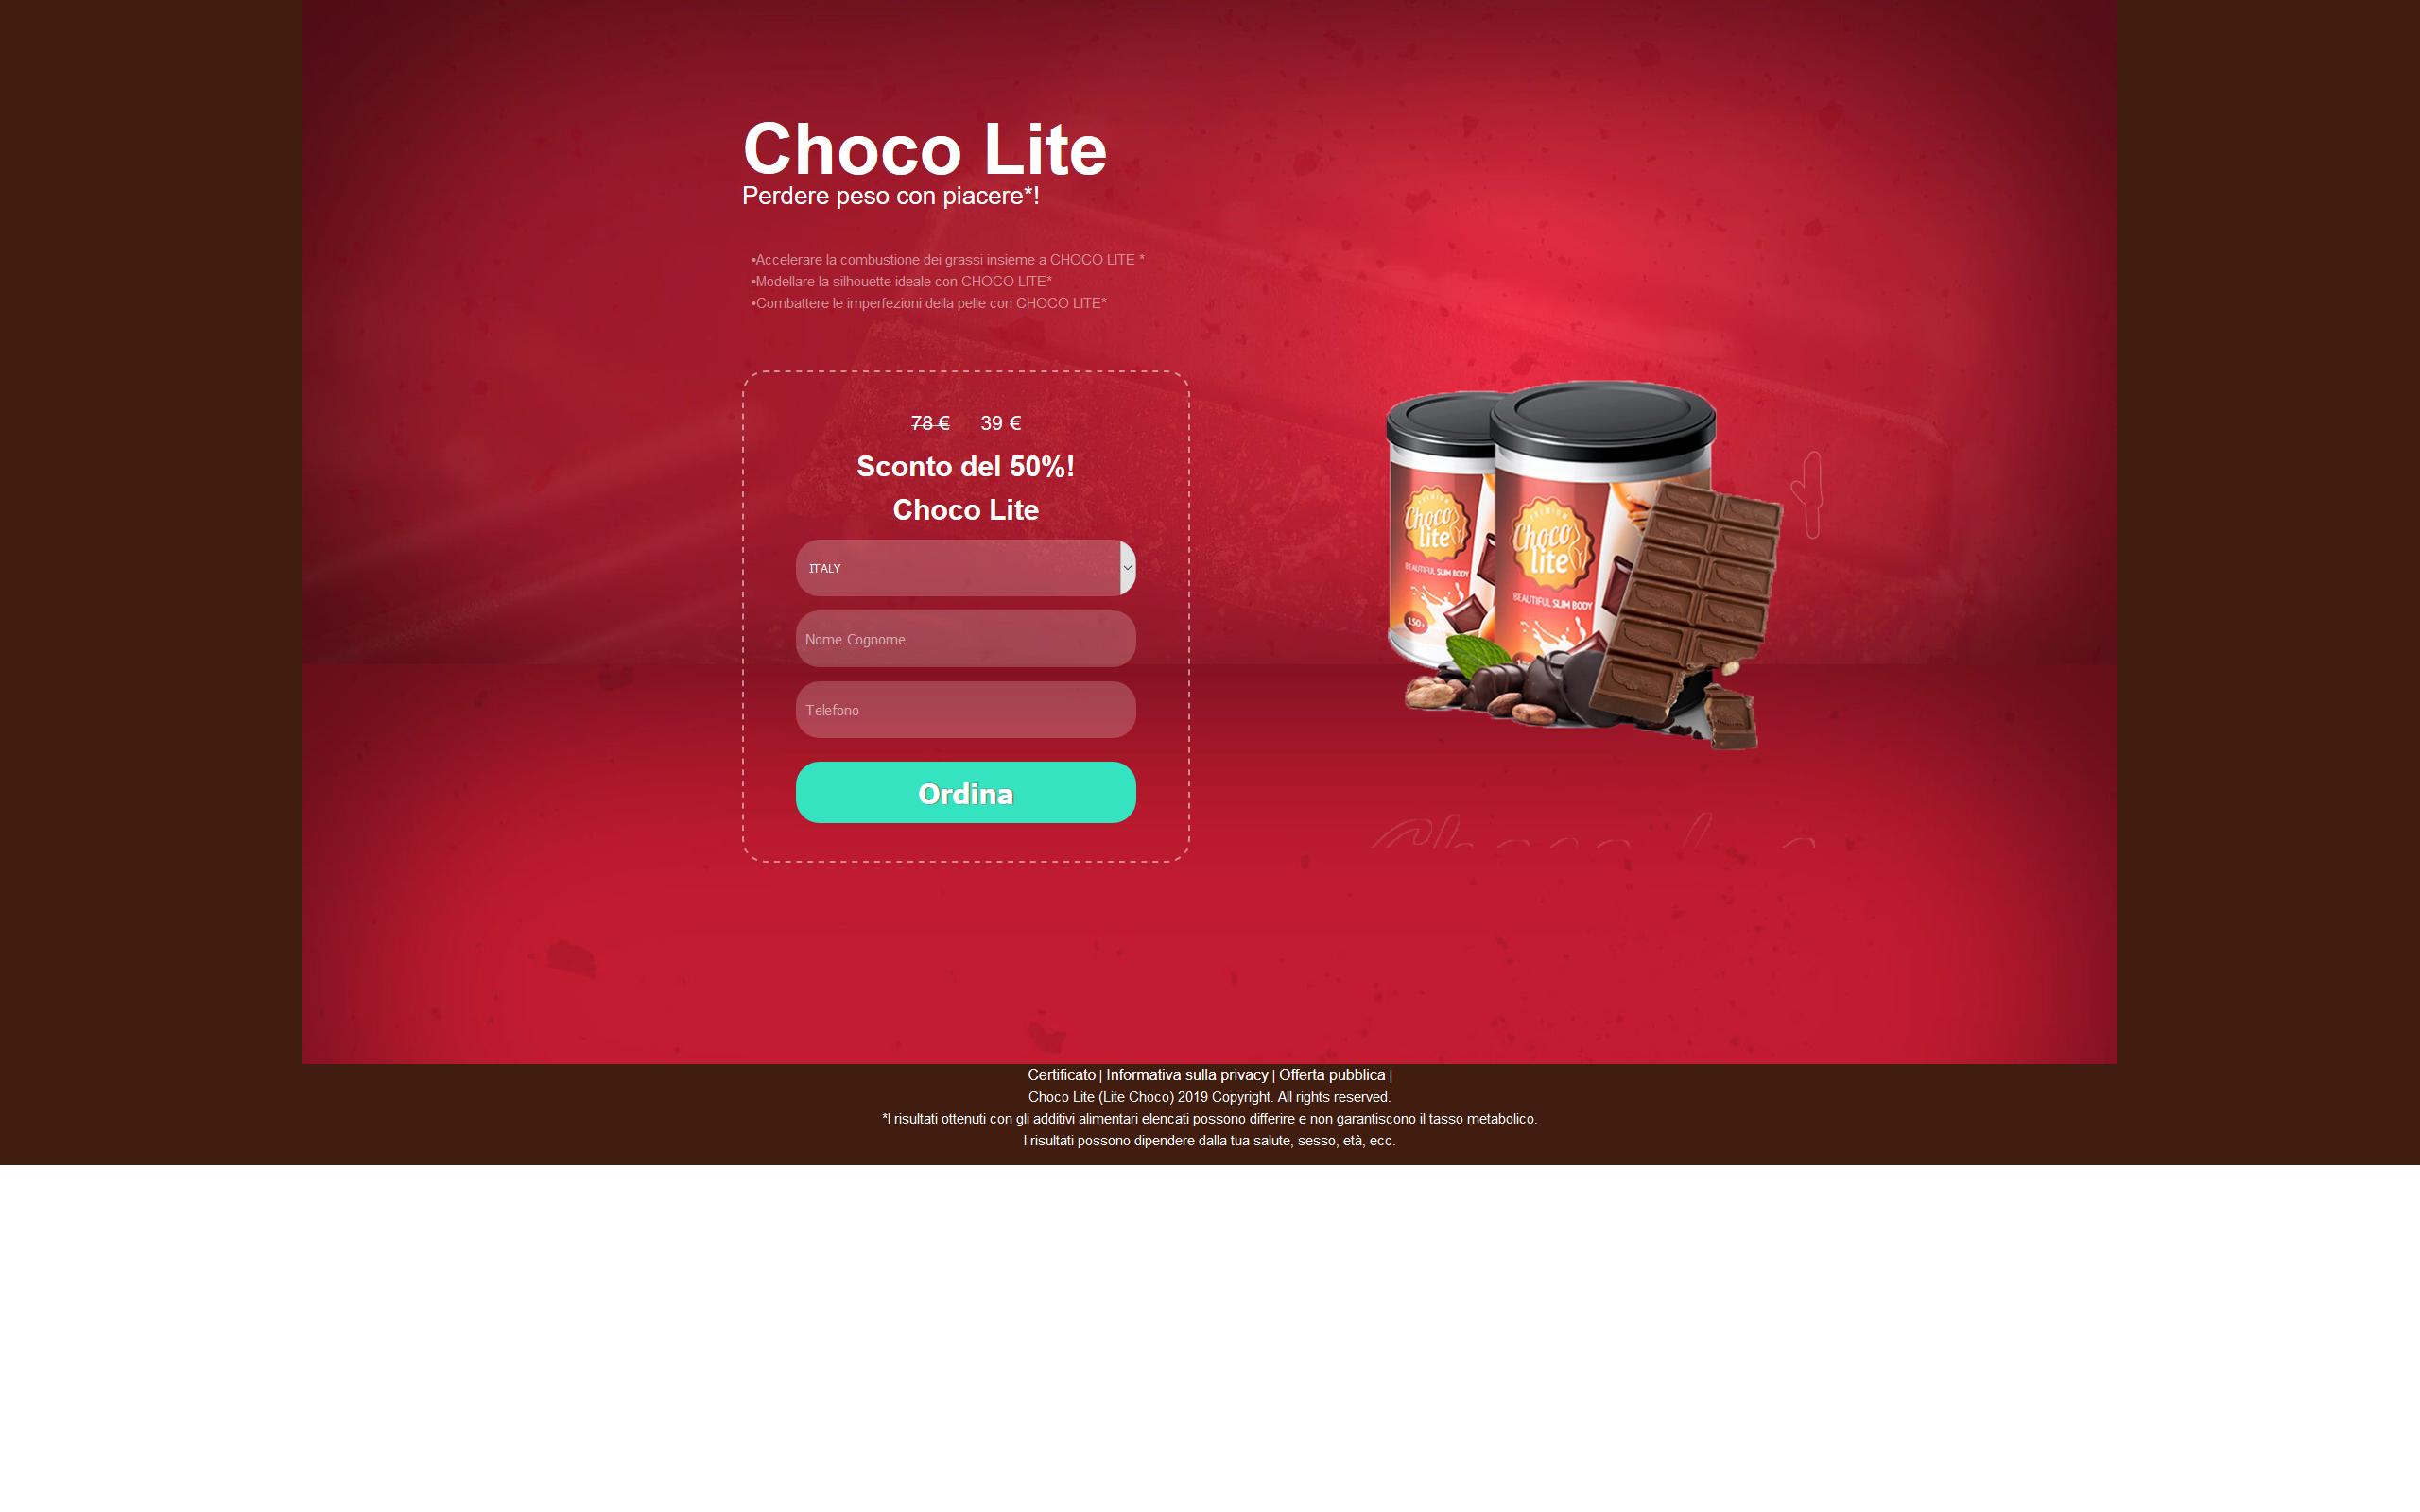 Choco Lite – Gusztustalan átverés, ne pocsékold rá a pénzed!